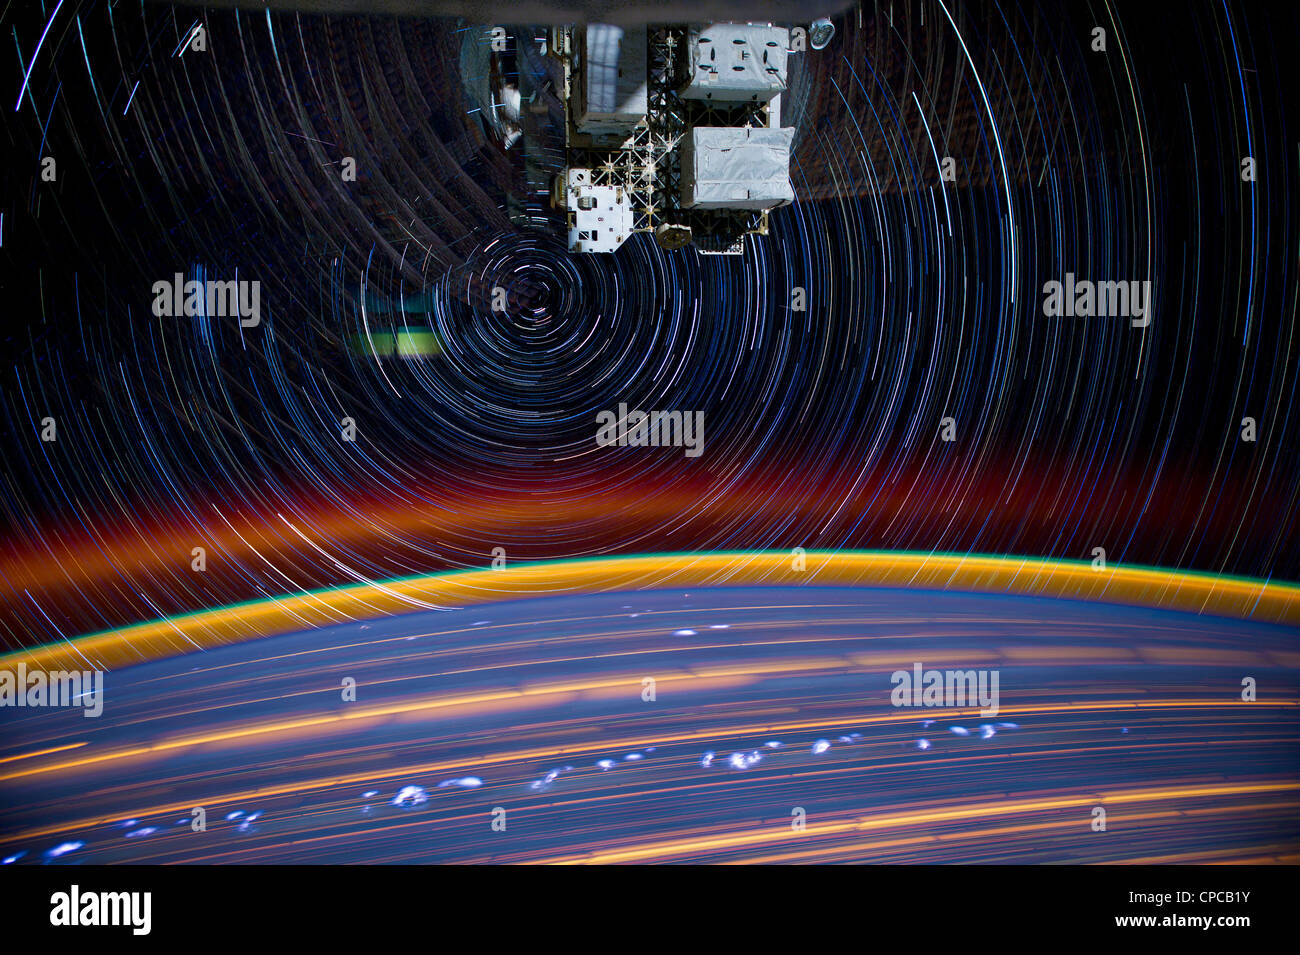 Zusammengesetzte Serie von Bildern fotografiert von einer montierten Kamera auf die Erde umkreisen ISS Sternspuren zeigt, wie sie 240 Meilen über der Erde umkreisen. Insgesamt 18 Bilder von den Astronauten-überwachte stationäre Kamera fotografiert wurden kombiniert, um das zusammengesetzte erstellen. Stockfoto